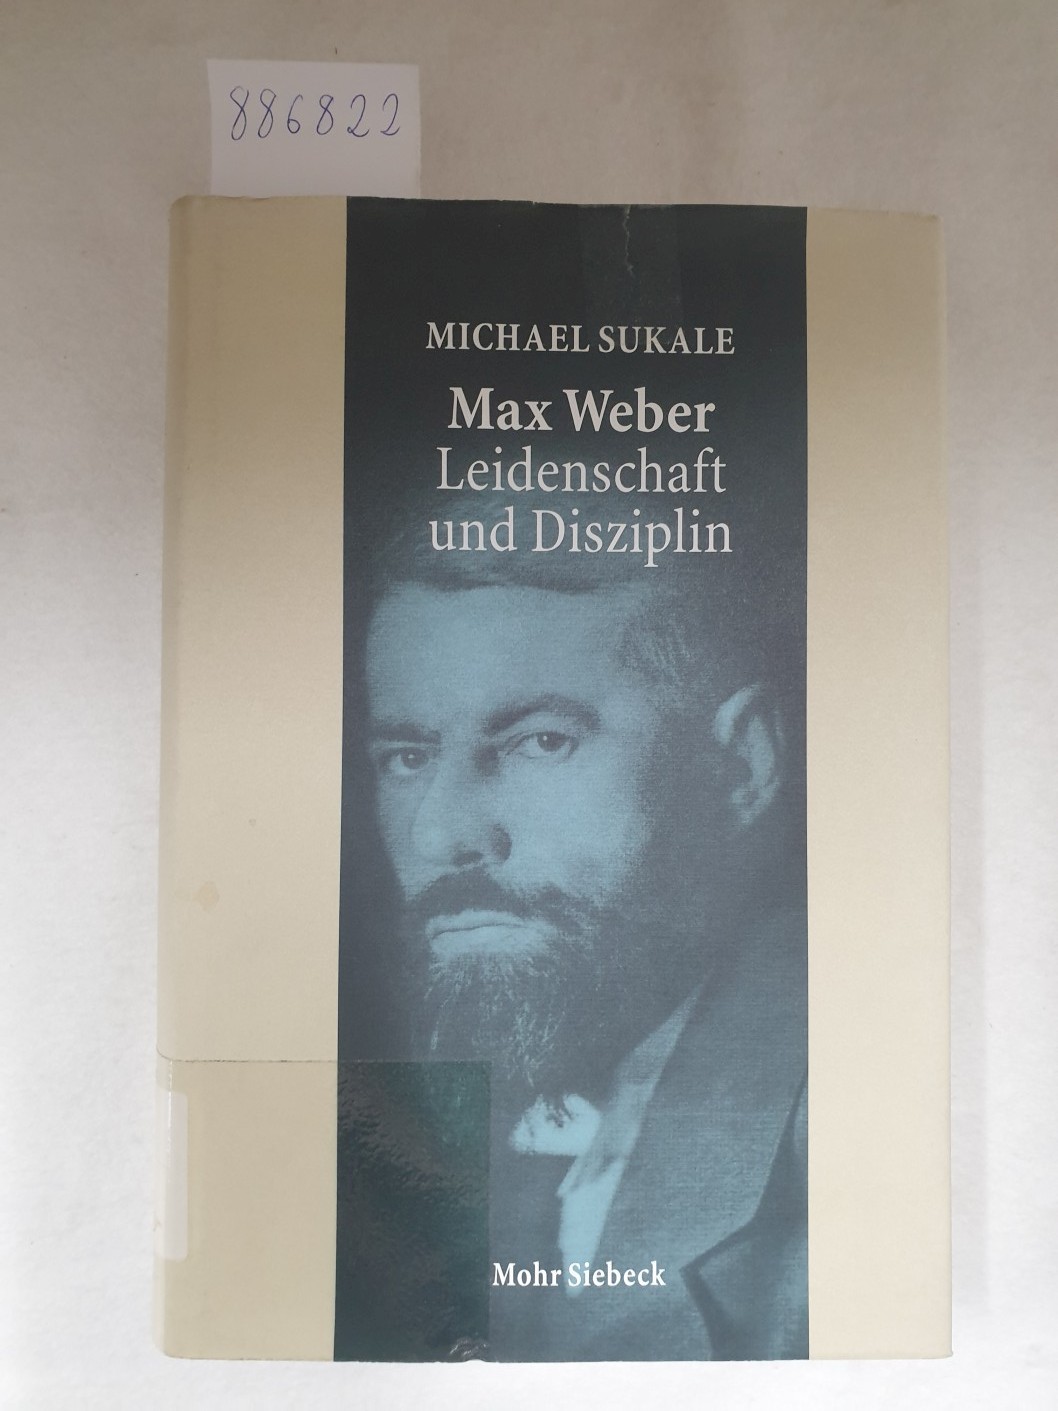 Max Weber - Leidenschaft und Disziplin : Leben, Werk, Zeitgenossen : - Sukale, Michael